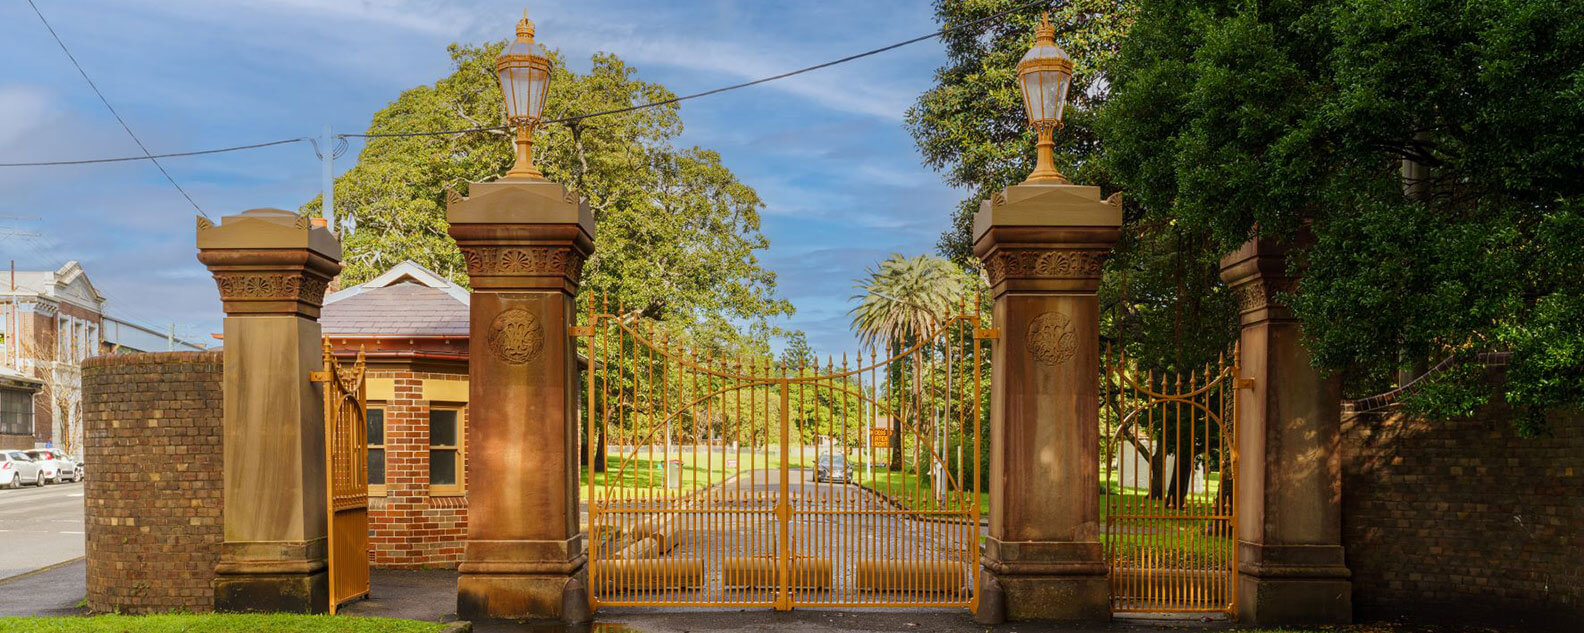 Heritage gates to Callan Park